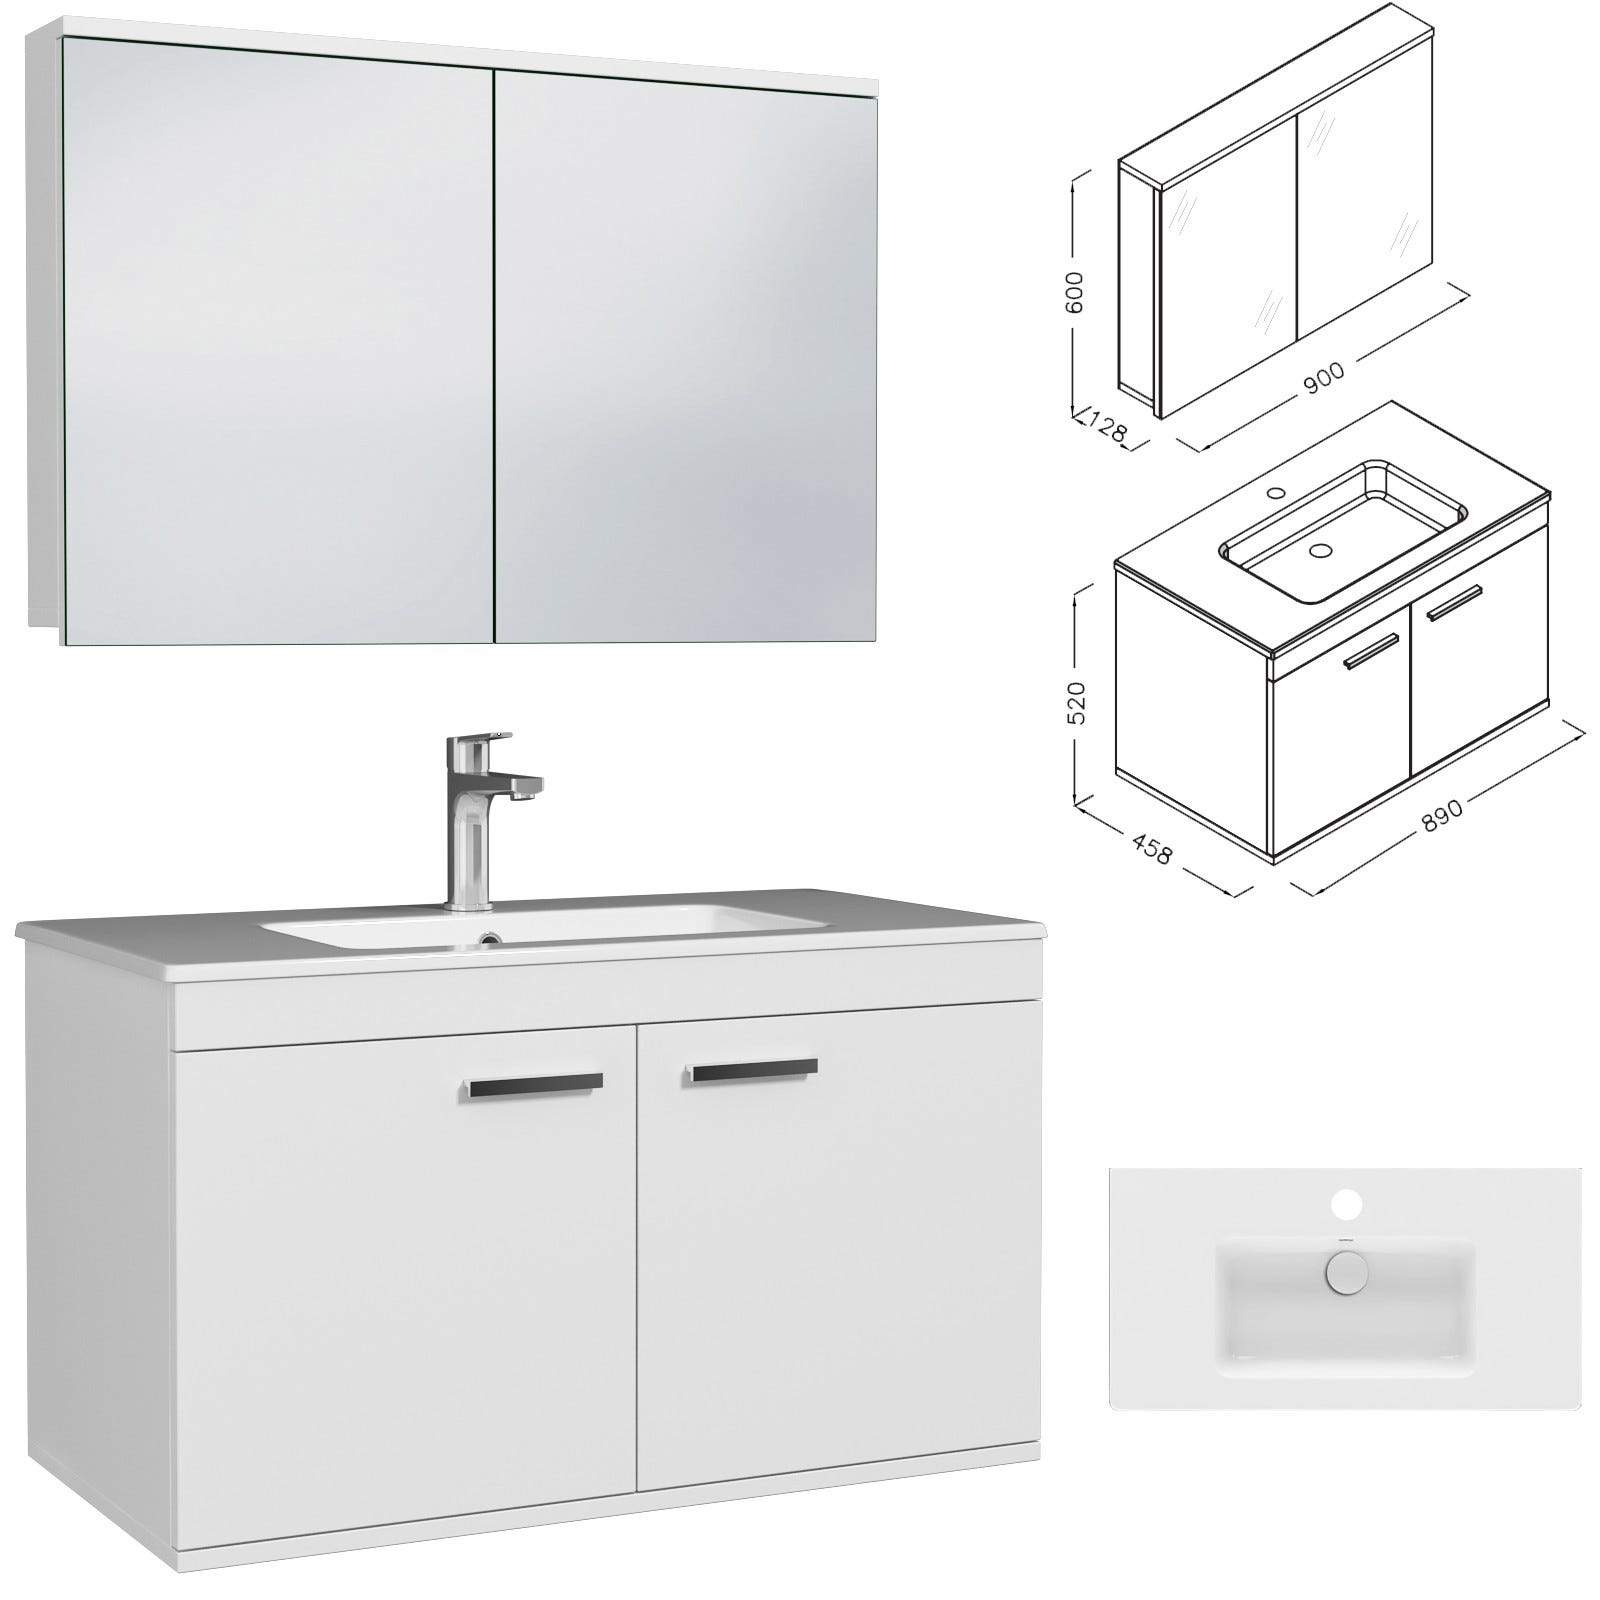 RUBITE Meuble salle de bain simple vasque 2 portes blanc largeur 90 cm + miroir armoire 2